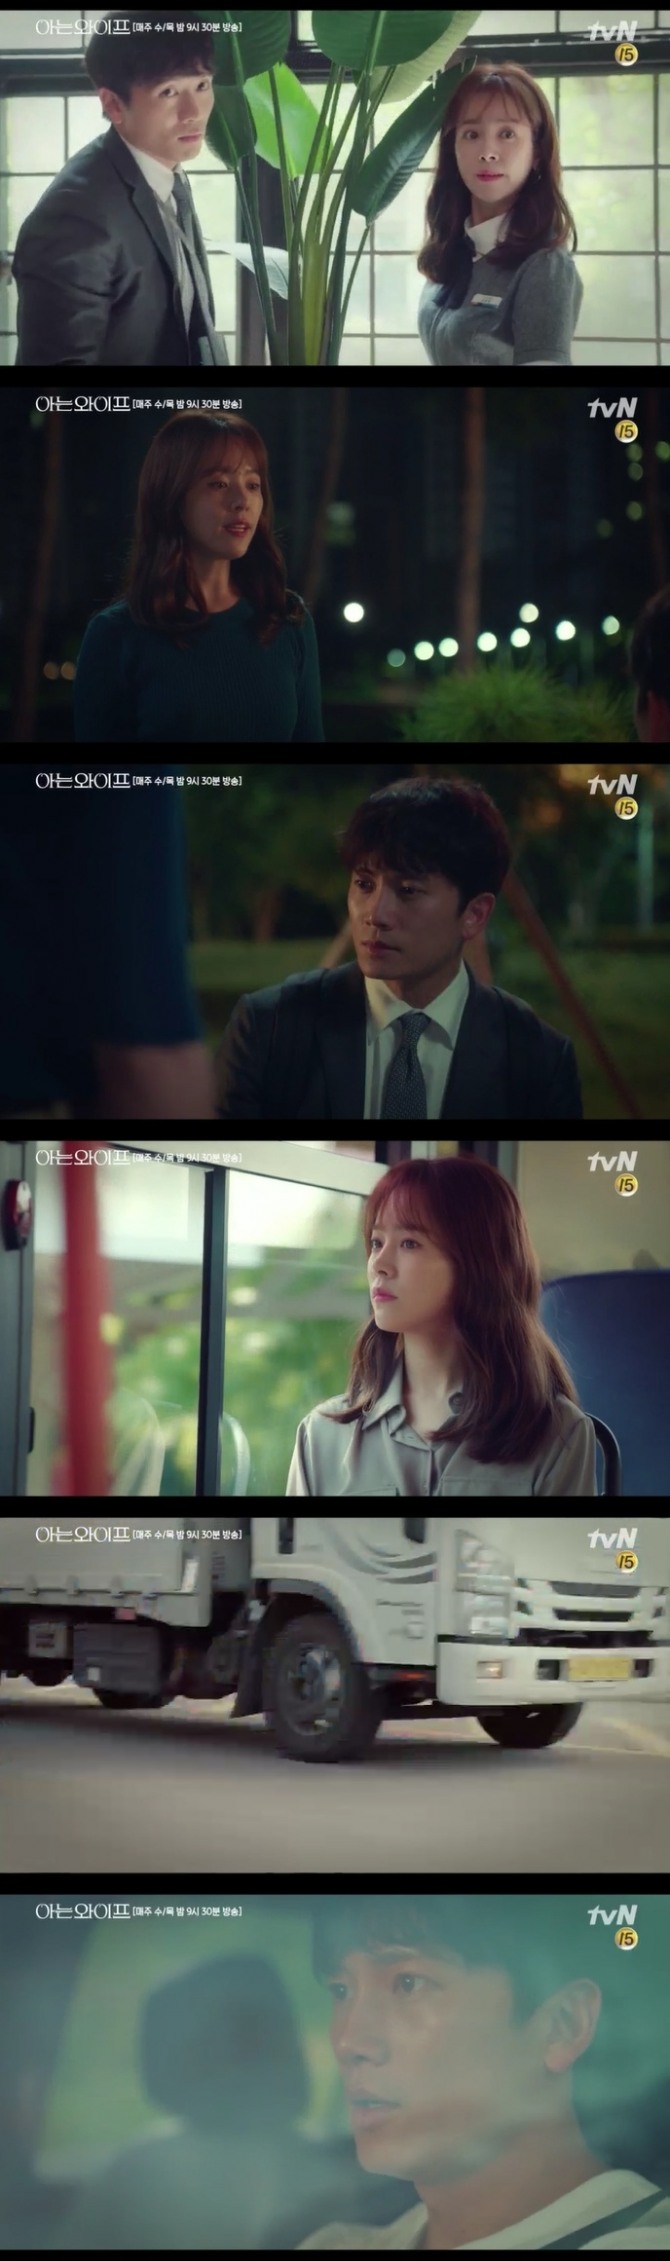 13일 저녁 방송되는 tvN 수목드라마 '아는 와이프' 14회에서는 서우진(한지민)이 리셋한 인생에서 주혁(지성)은 최책감에 계속 그녀를 밀어낸다. 하지만 우진이 타고가던 버스가 교통사고가 났다는 누스를 들은 주혁이 우진에게 달려가 반전 기대감을 높인다. 사진=tvN 영상 캡처